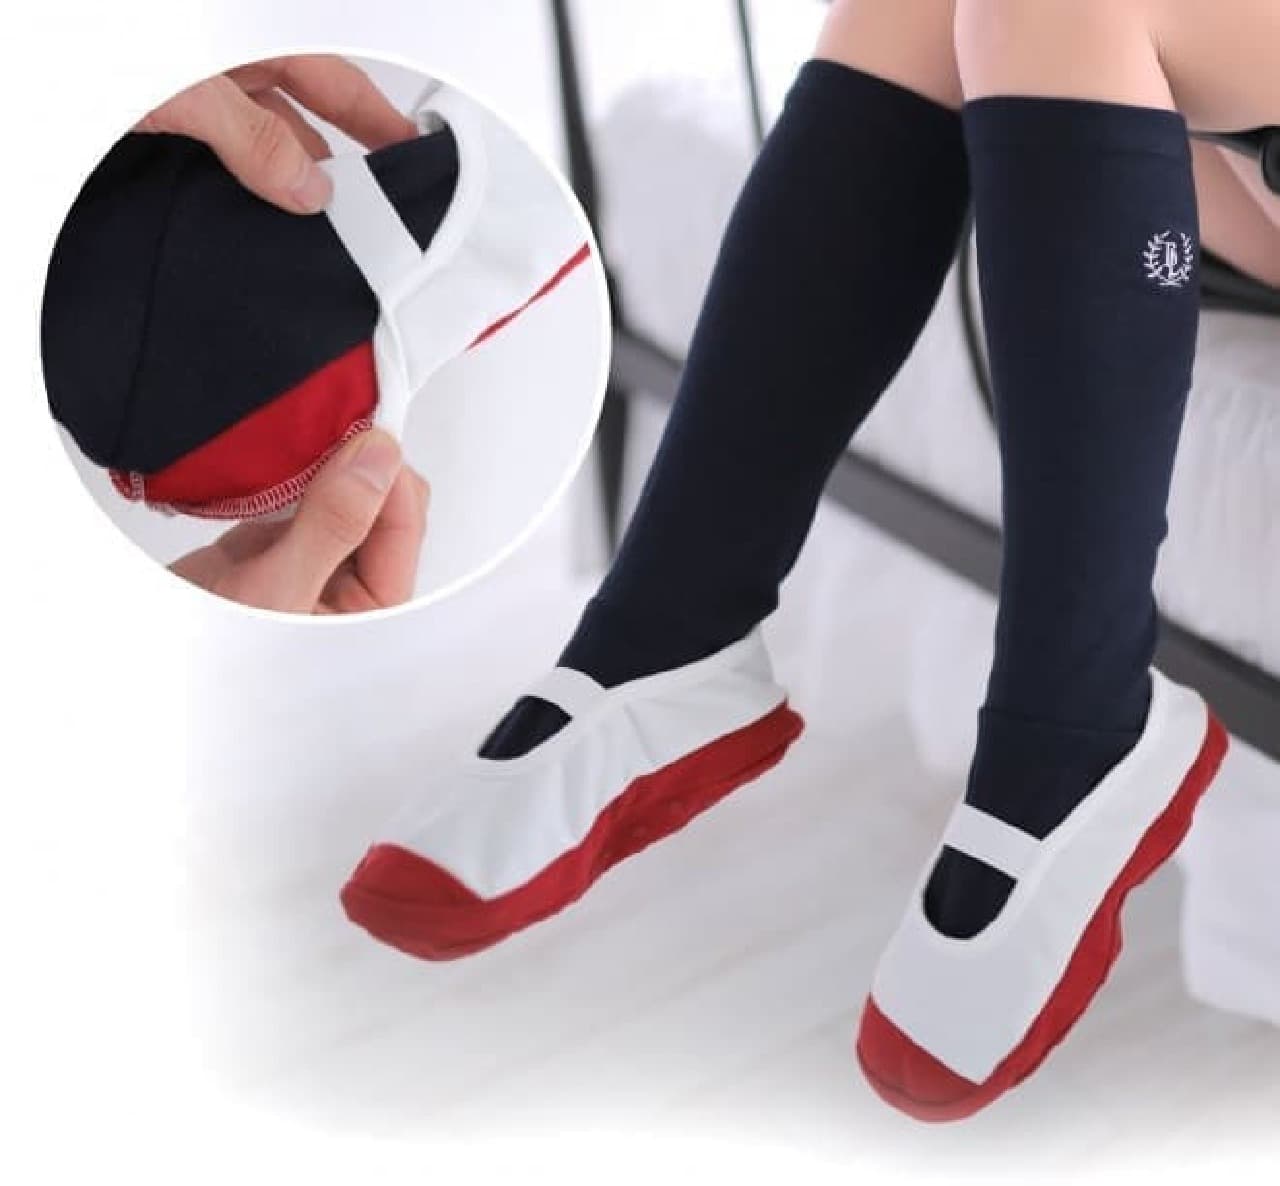 「上履きルームソックス」は、足部分が上履き、足首から上がソックスというデザインのリラックスグッズ